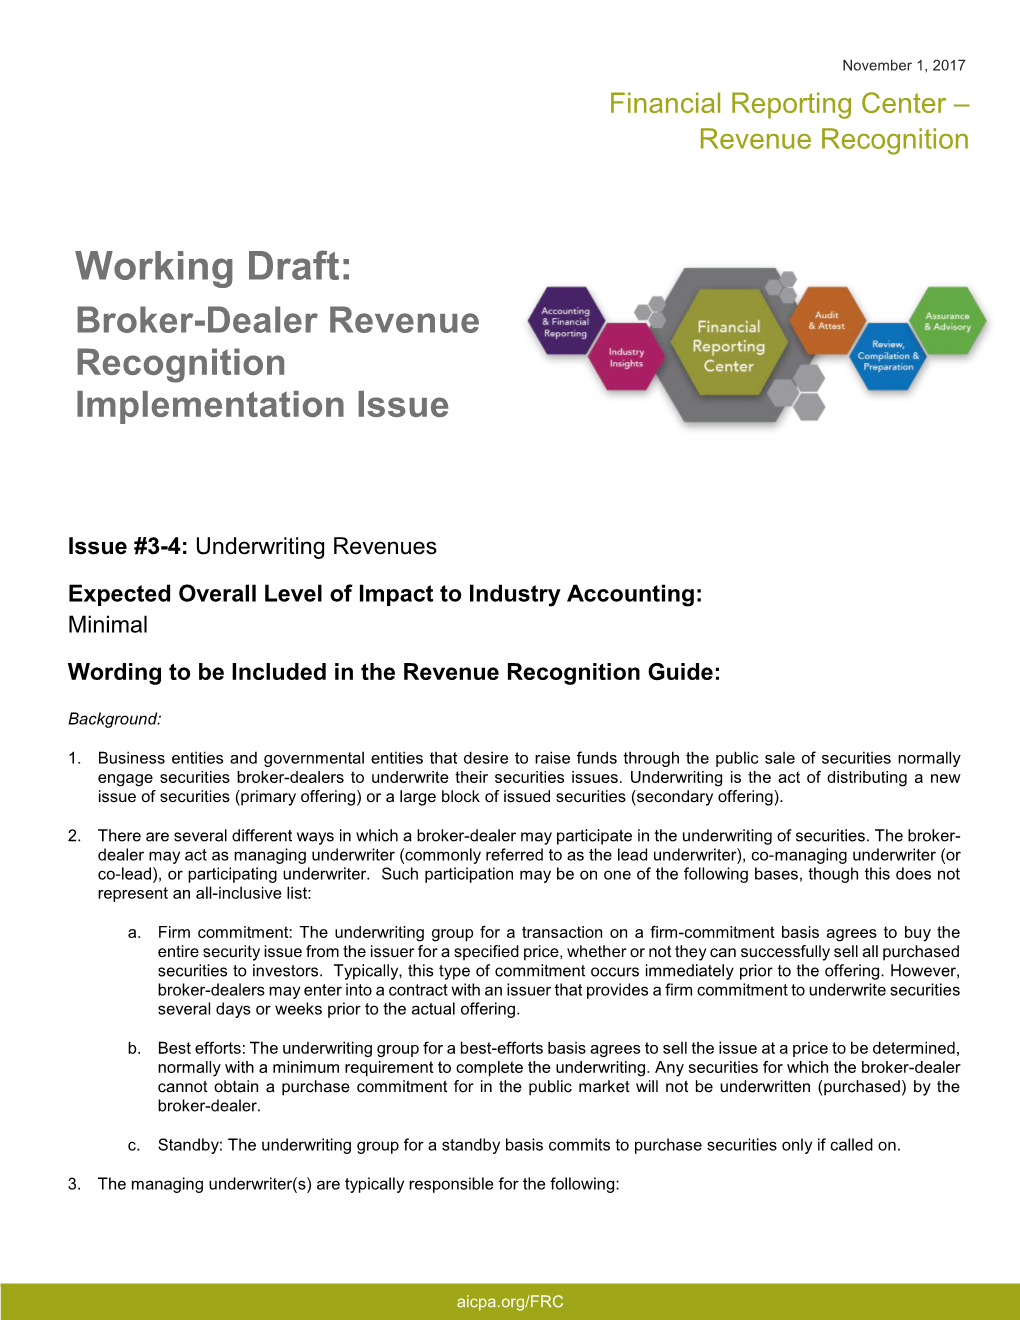 Working Draft: Broker-Dealer Revenue Recognition